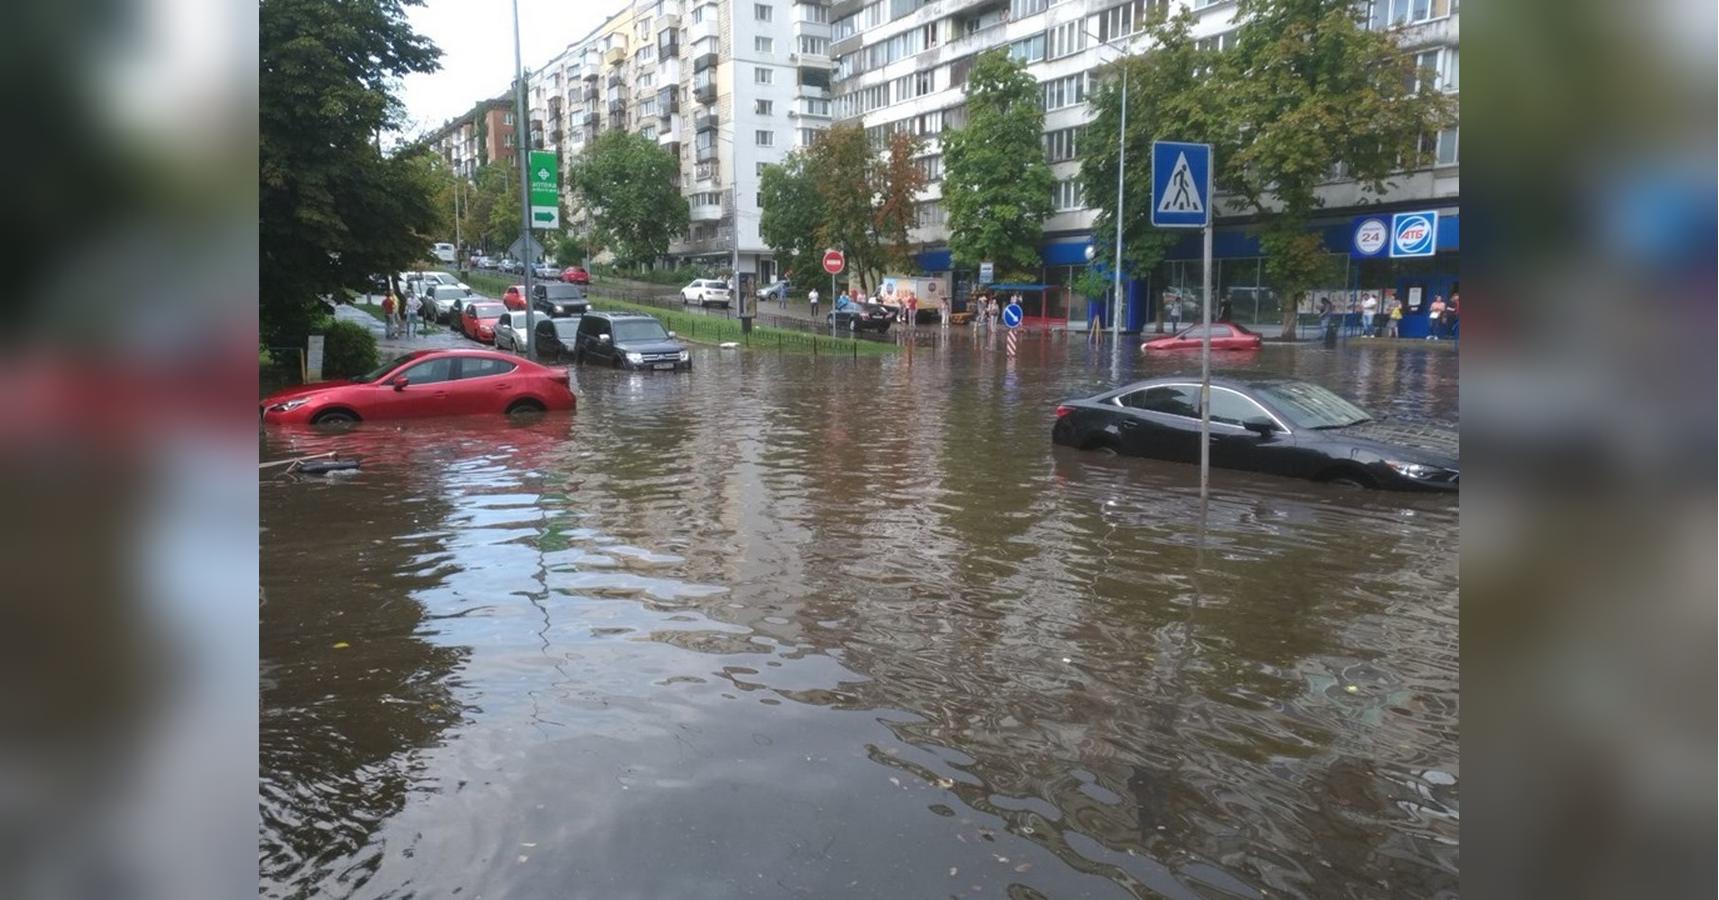 Potop Posle Dozhdya V Kieve 29 Iyulya 2019 Smotret Foto I Video Fakty